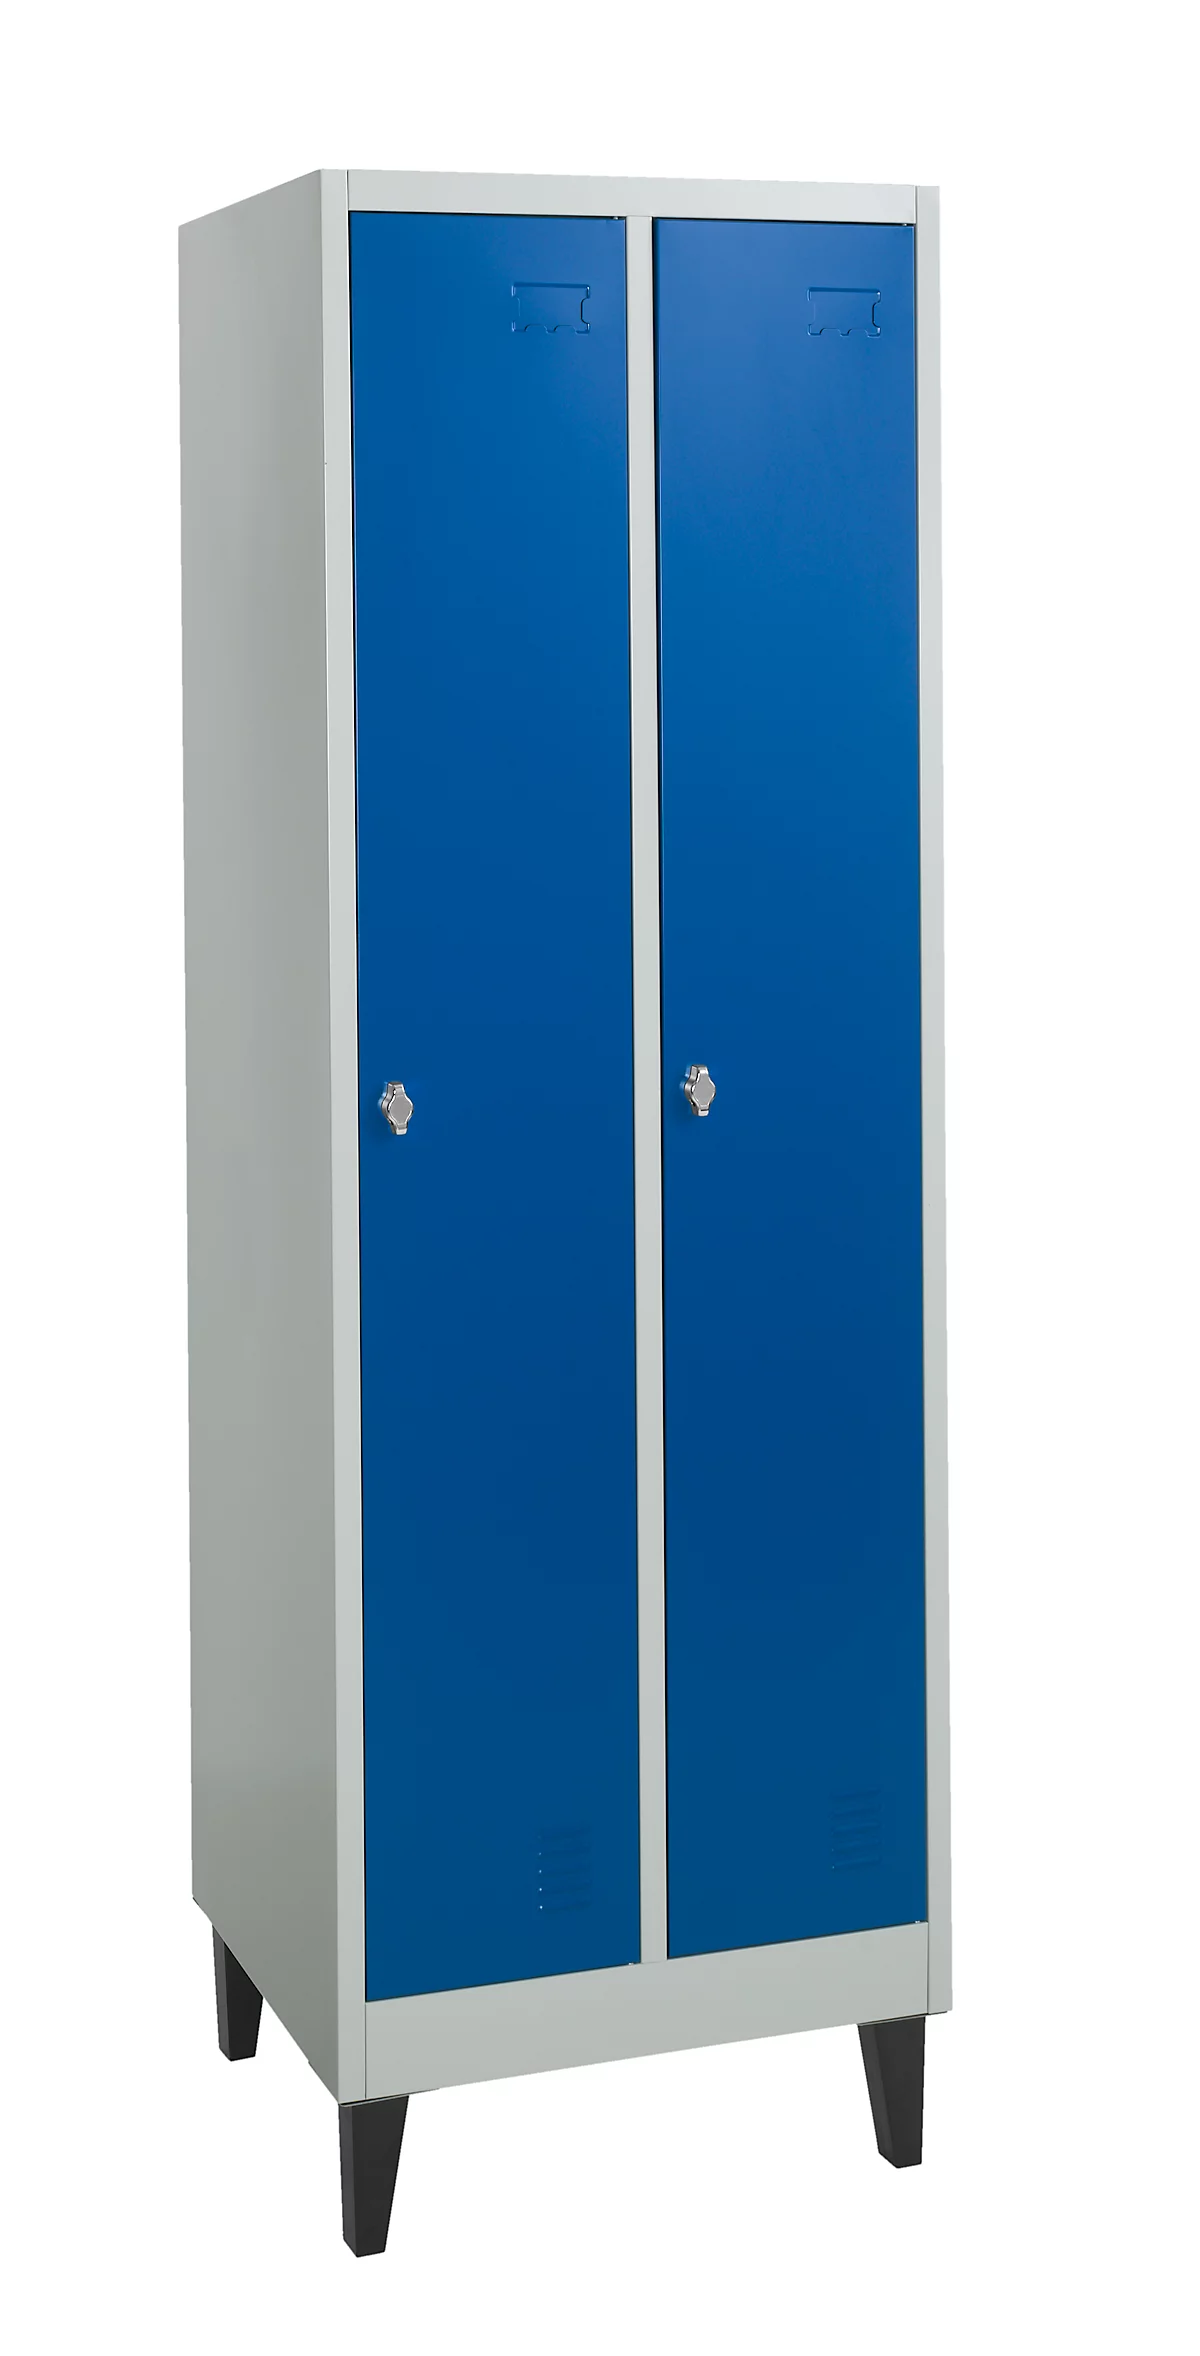 Lockerkast met 2 compartimenten, metaal, B 600 x D 500 x H 1850 mm, met hoedenplank, kledingstang met 3 verschuifbare haken, poten, slot met draaigrendel, grijs/blauw